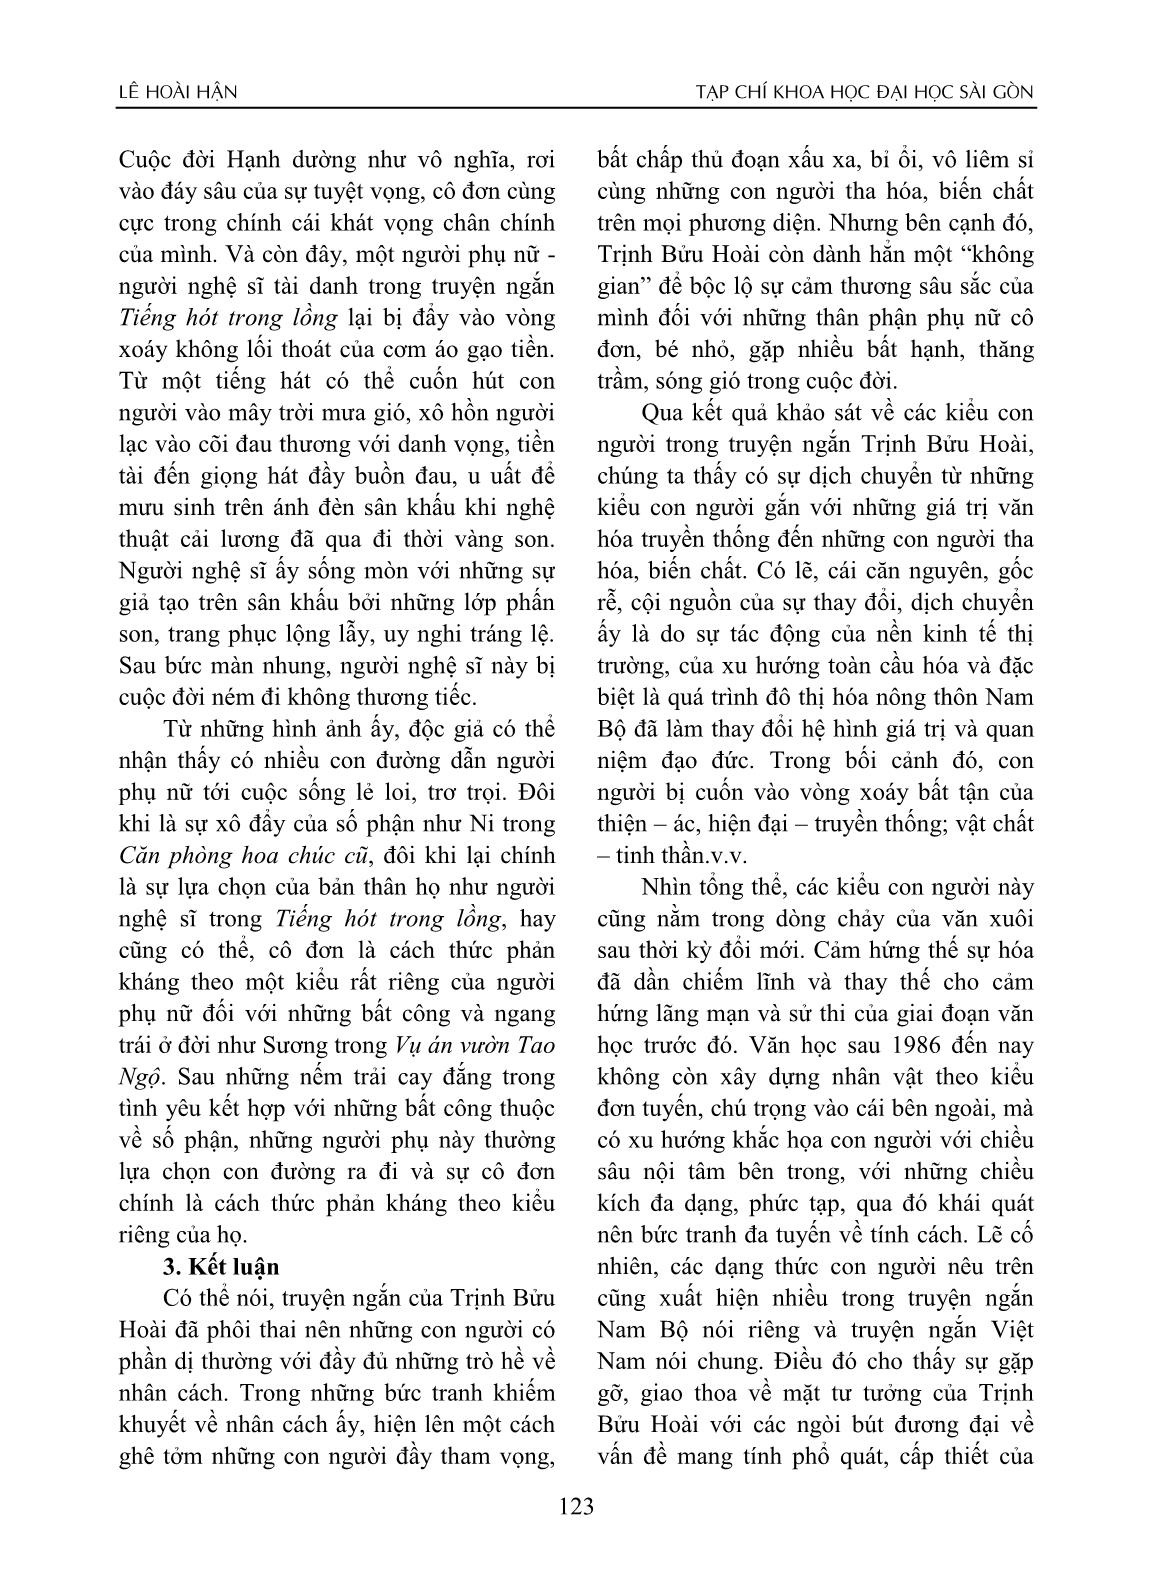 Con người Nam Bộ trong truyện ngắn Trịnh Bửu Hoài trang 6